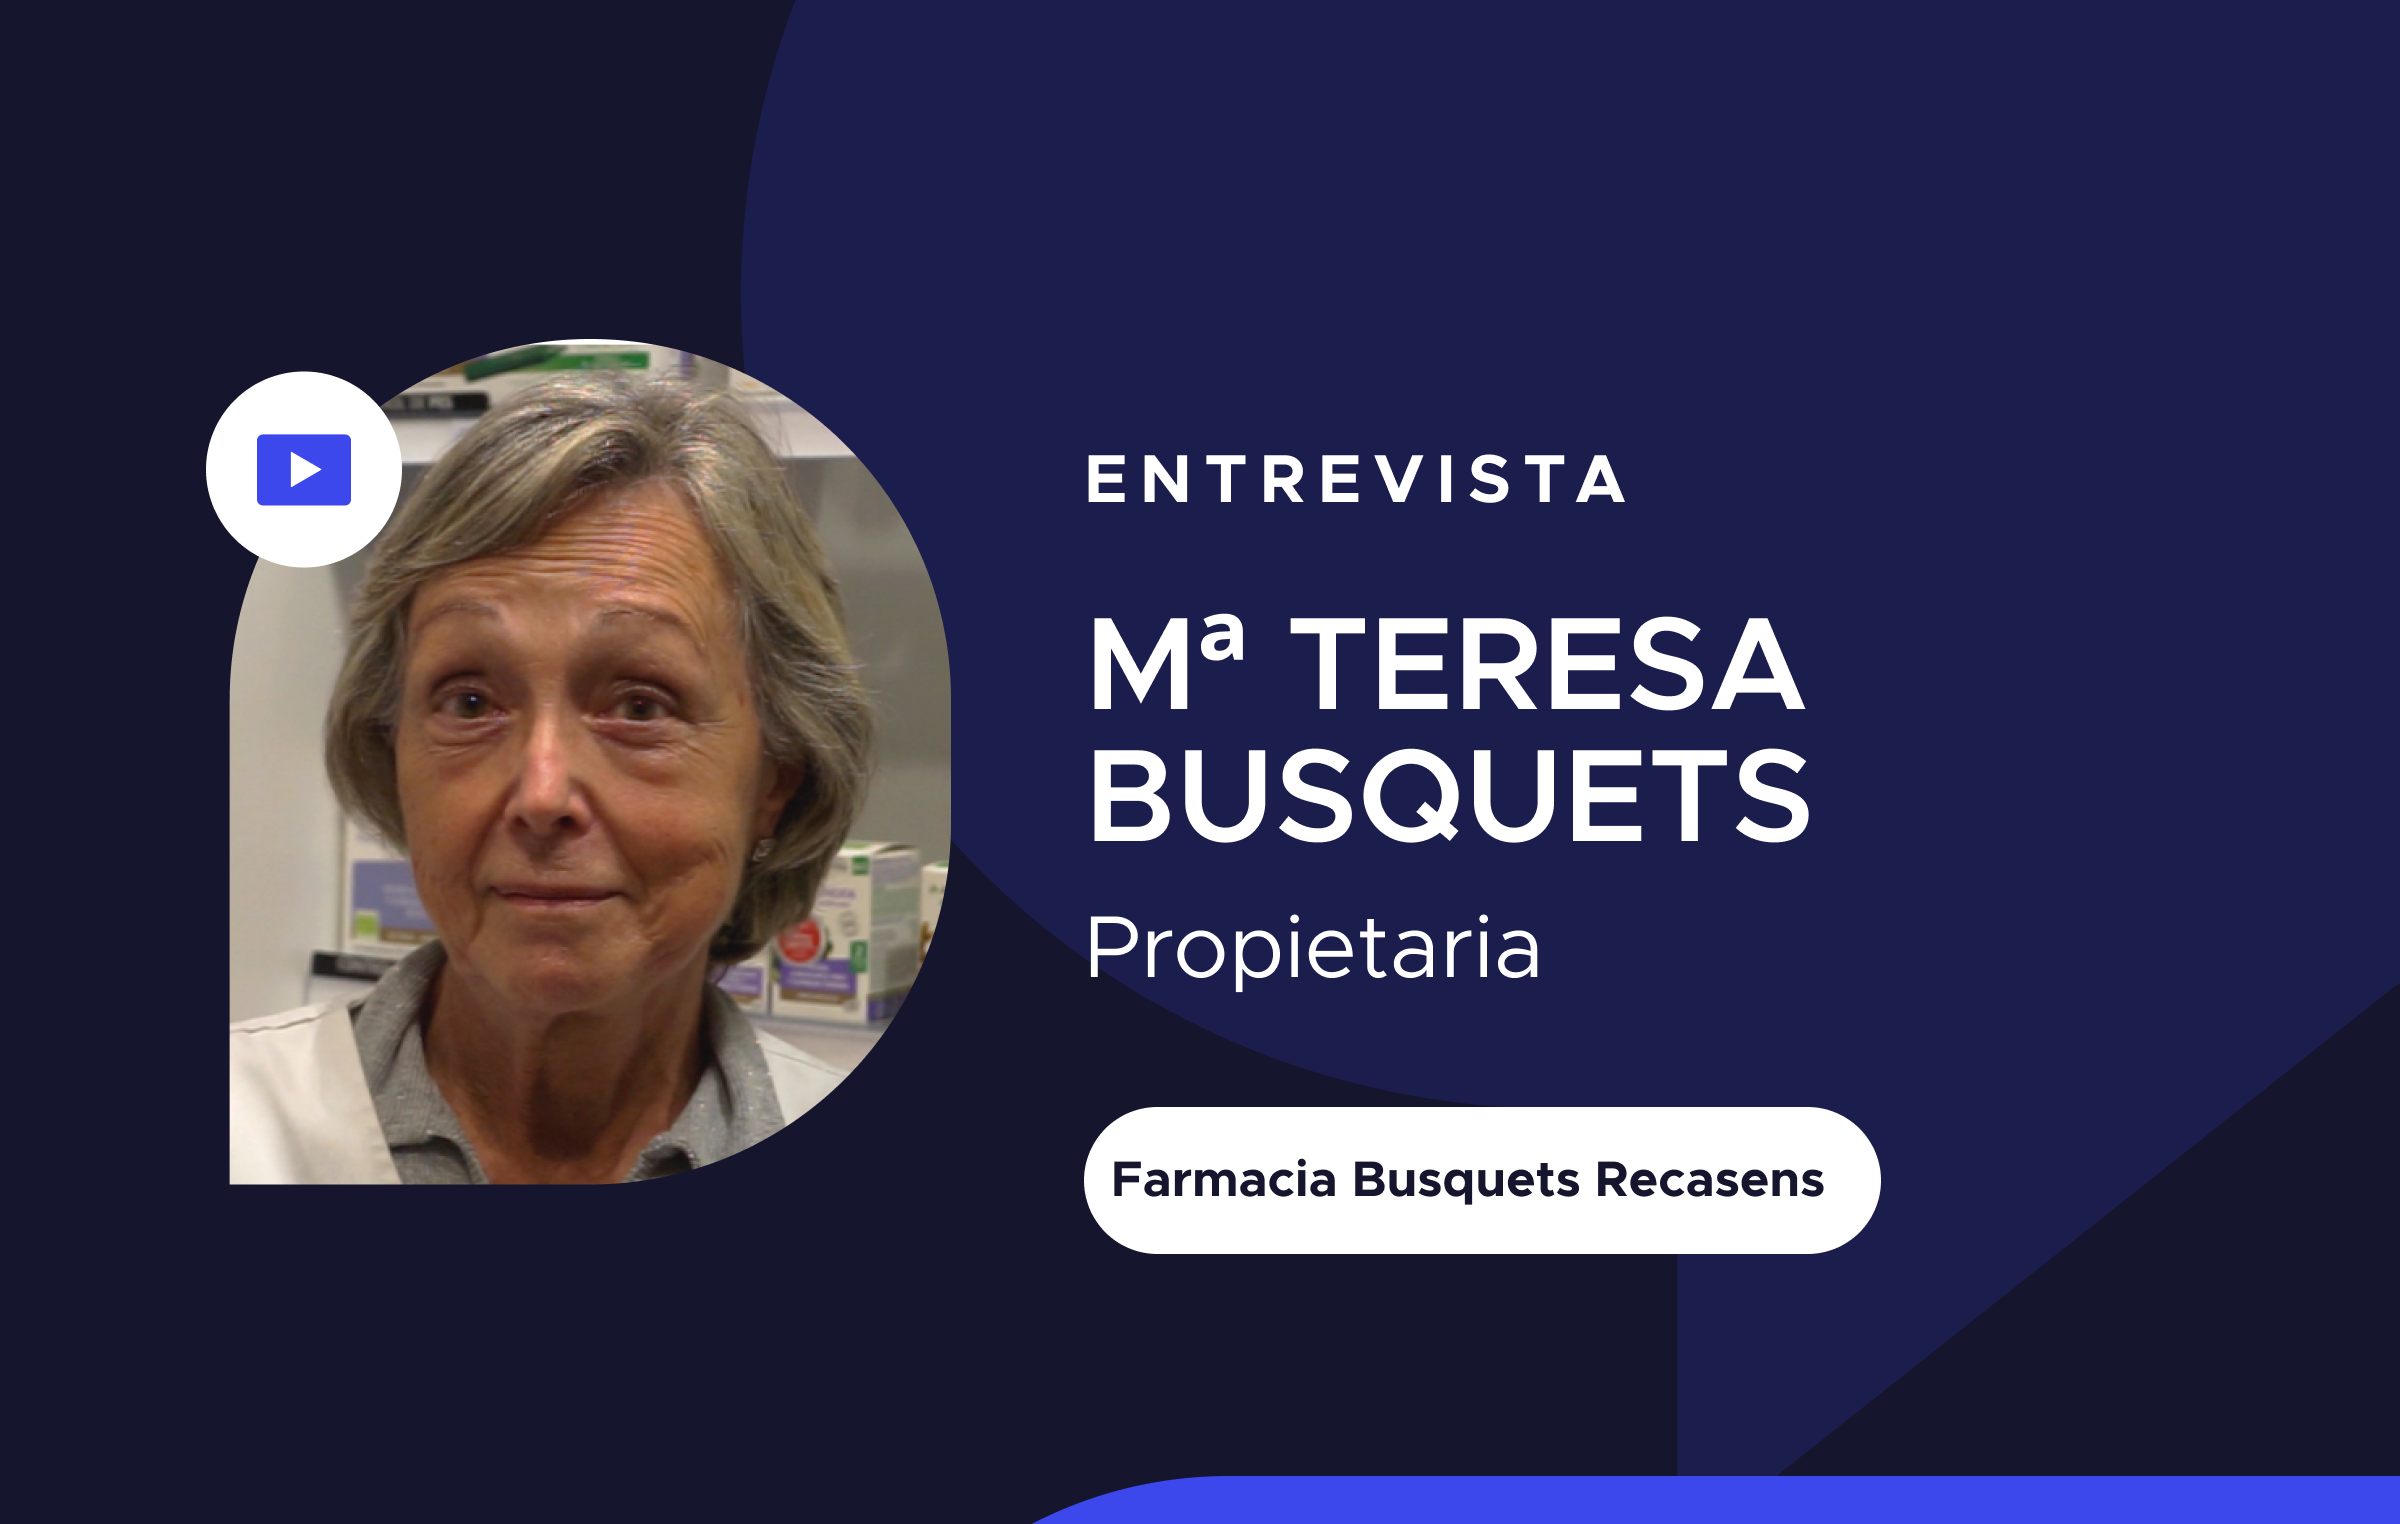 Entrevista_Farmacia Busquets